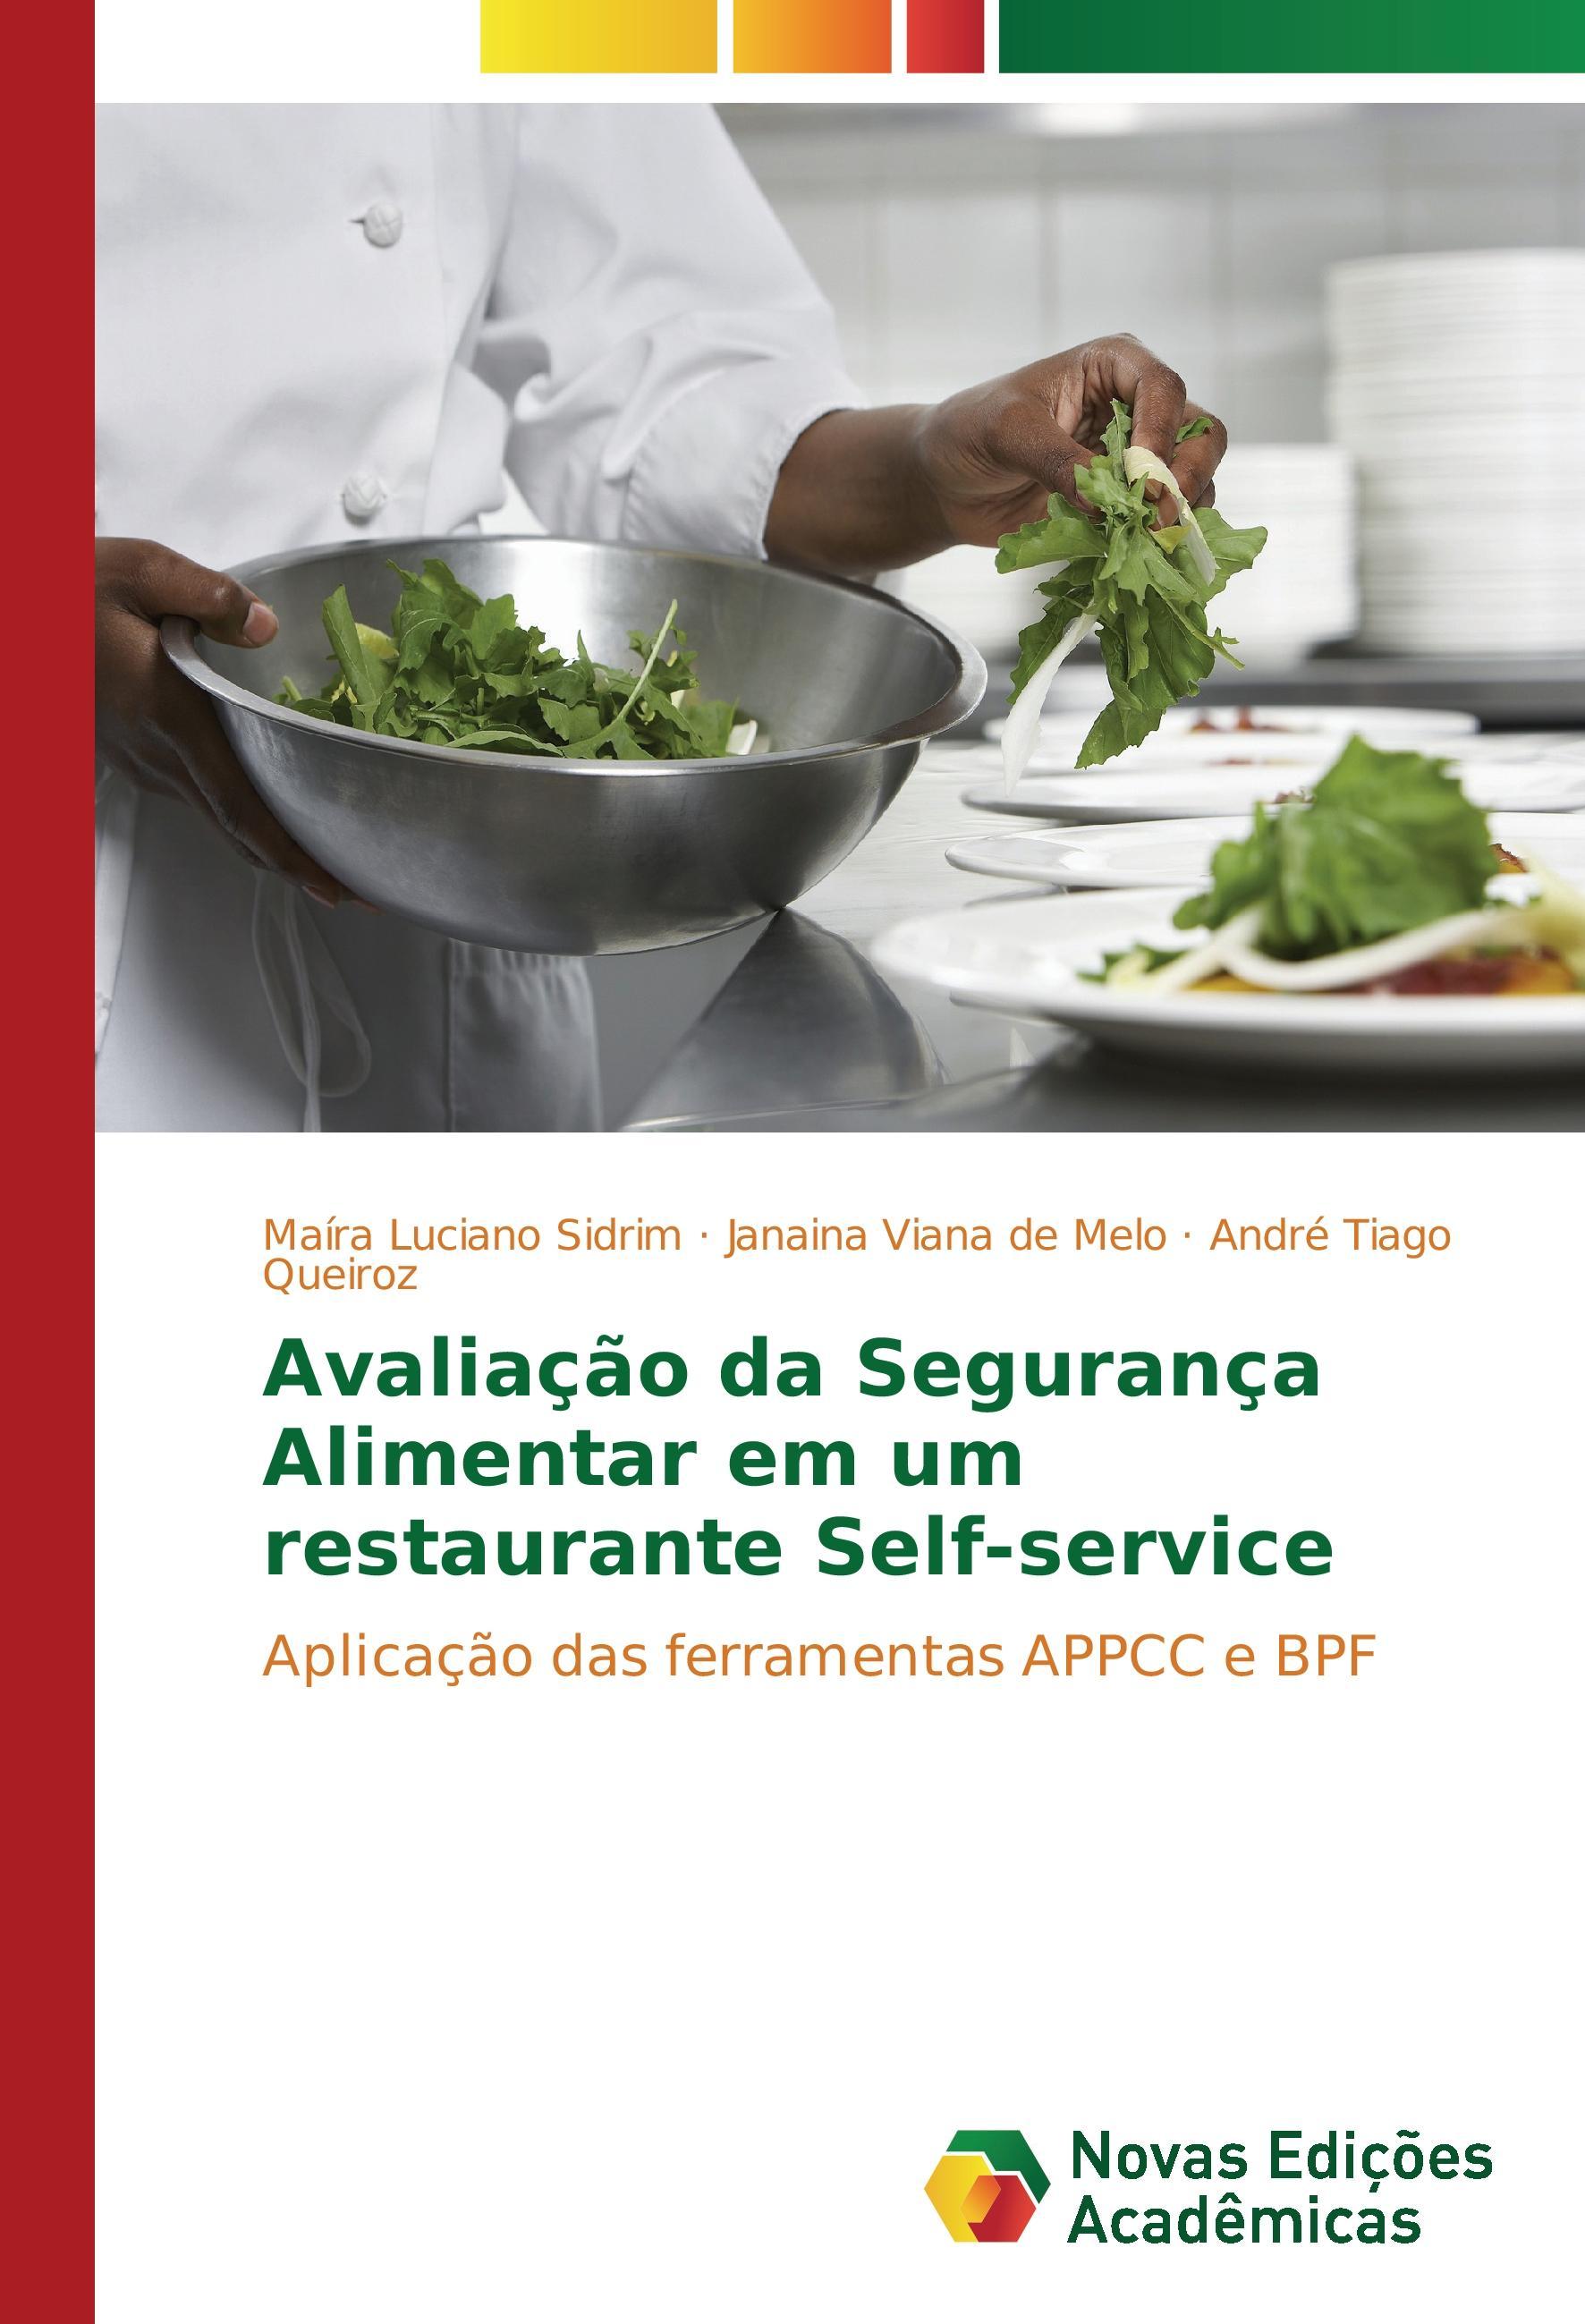 Avaliação da Segurança Alimentar em um restaurante Self-service - Luciano Sidrim, Maíra Viana de Melo, Janaina Tiago Queiroz, André